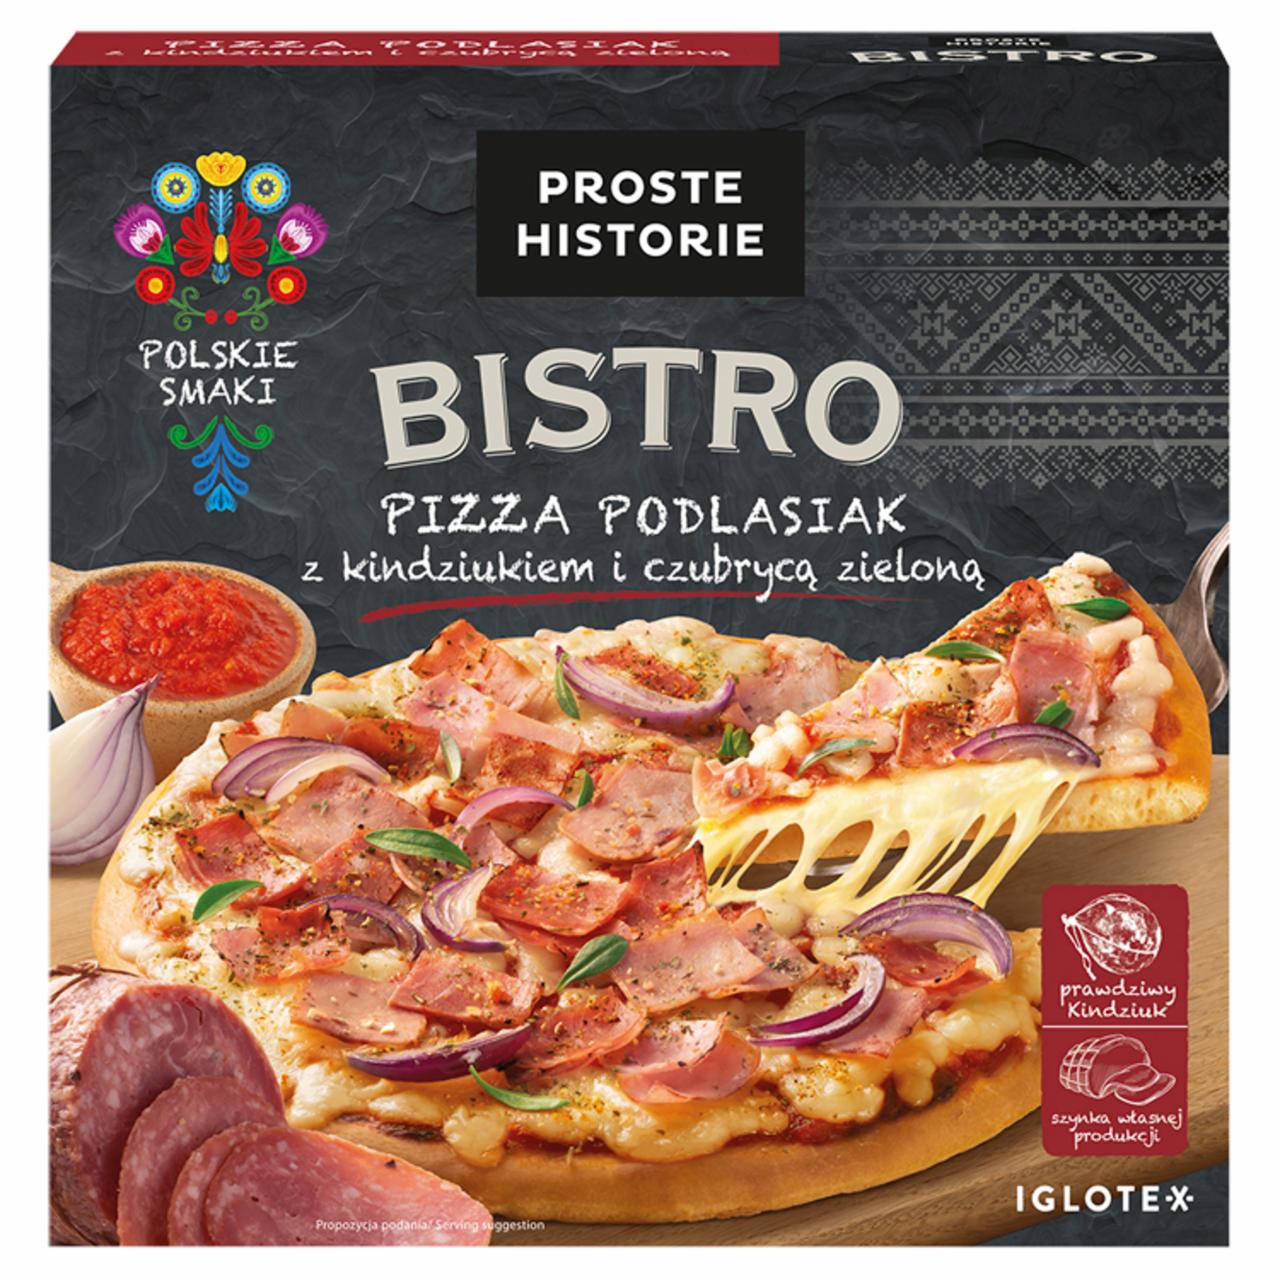 Zdjęcia - PROSTE HISTORIE Bistro Pizza podlasiak z kindziukiem i czubrycą zieloną 395 g 